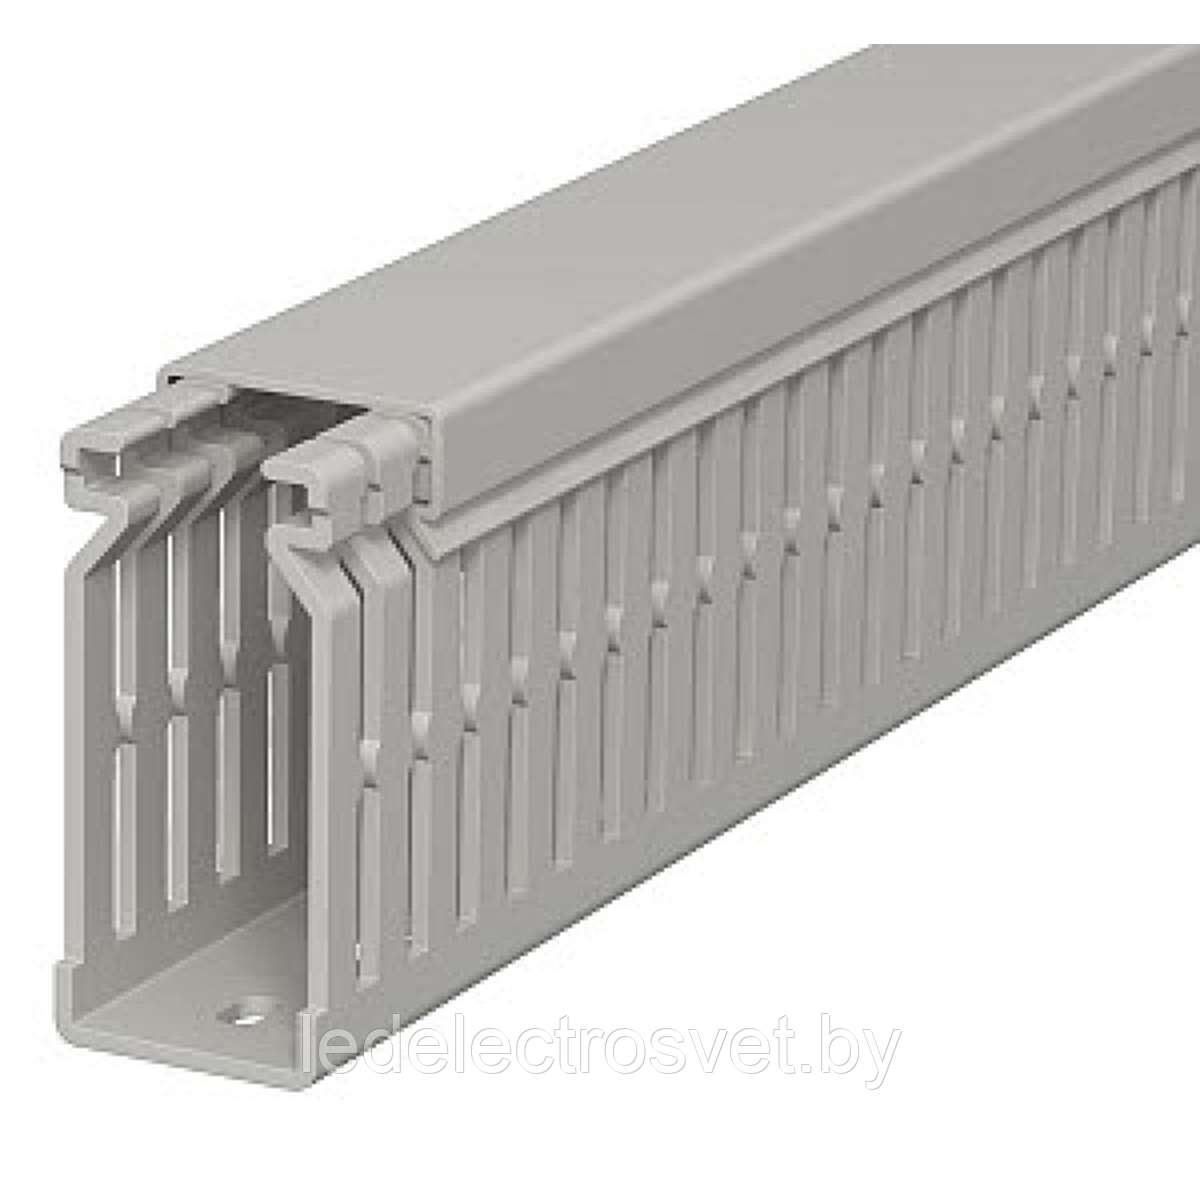 Перфокороб LKV 10037, органайзер для шкафов, 100 x 37 мм (глубина х ширина крышки), L=2000мм, RAL 7030 серый